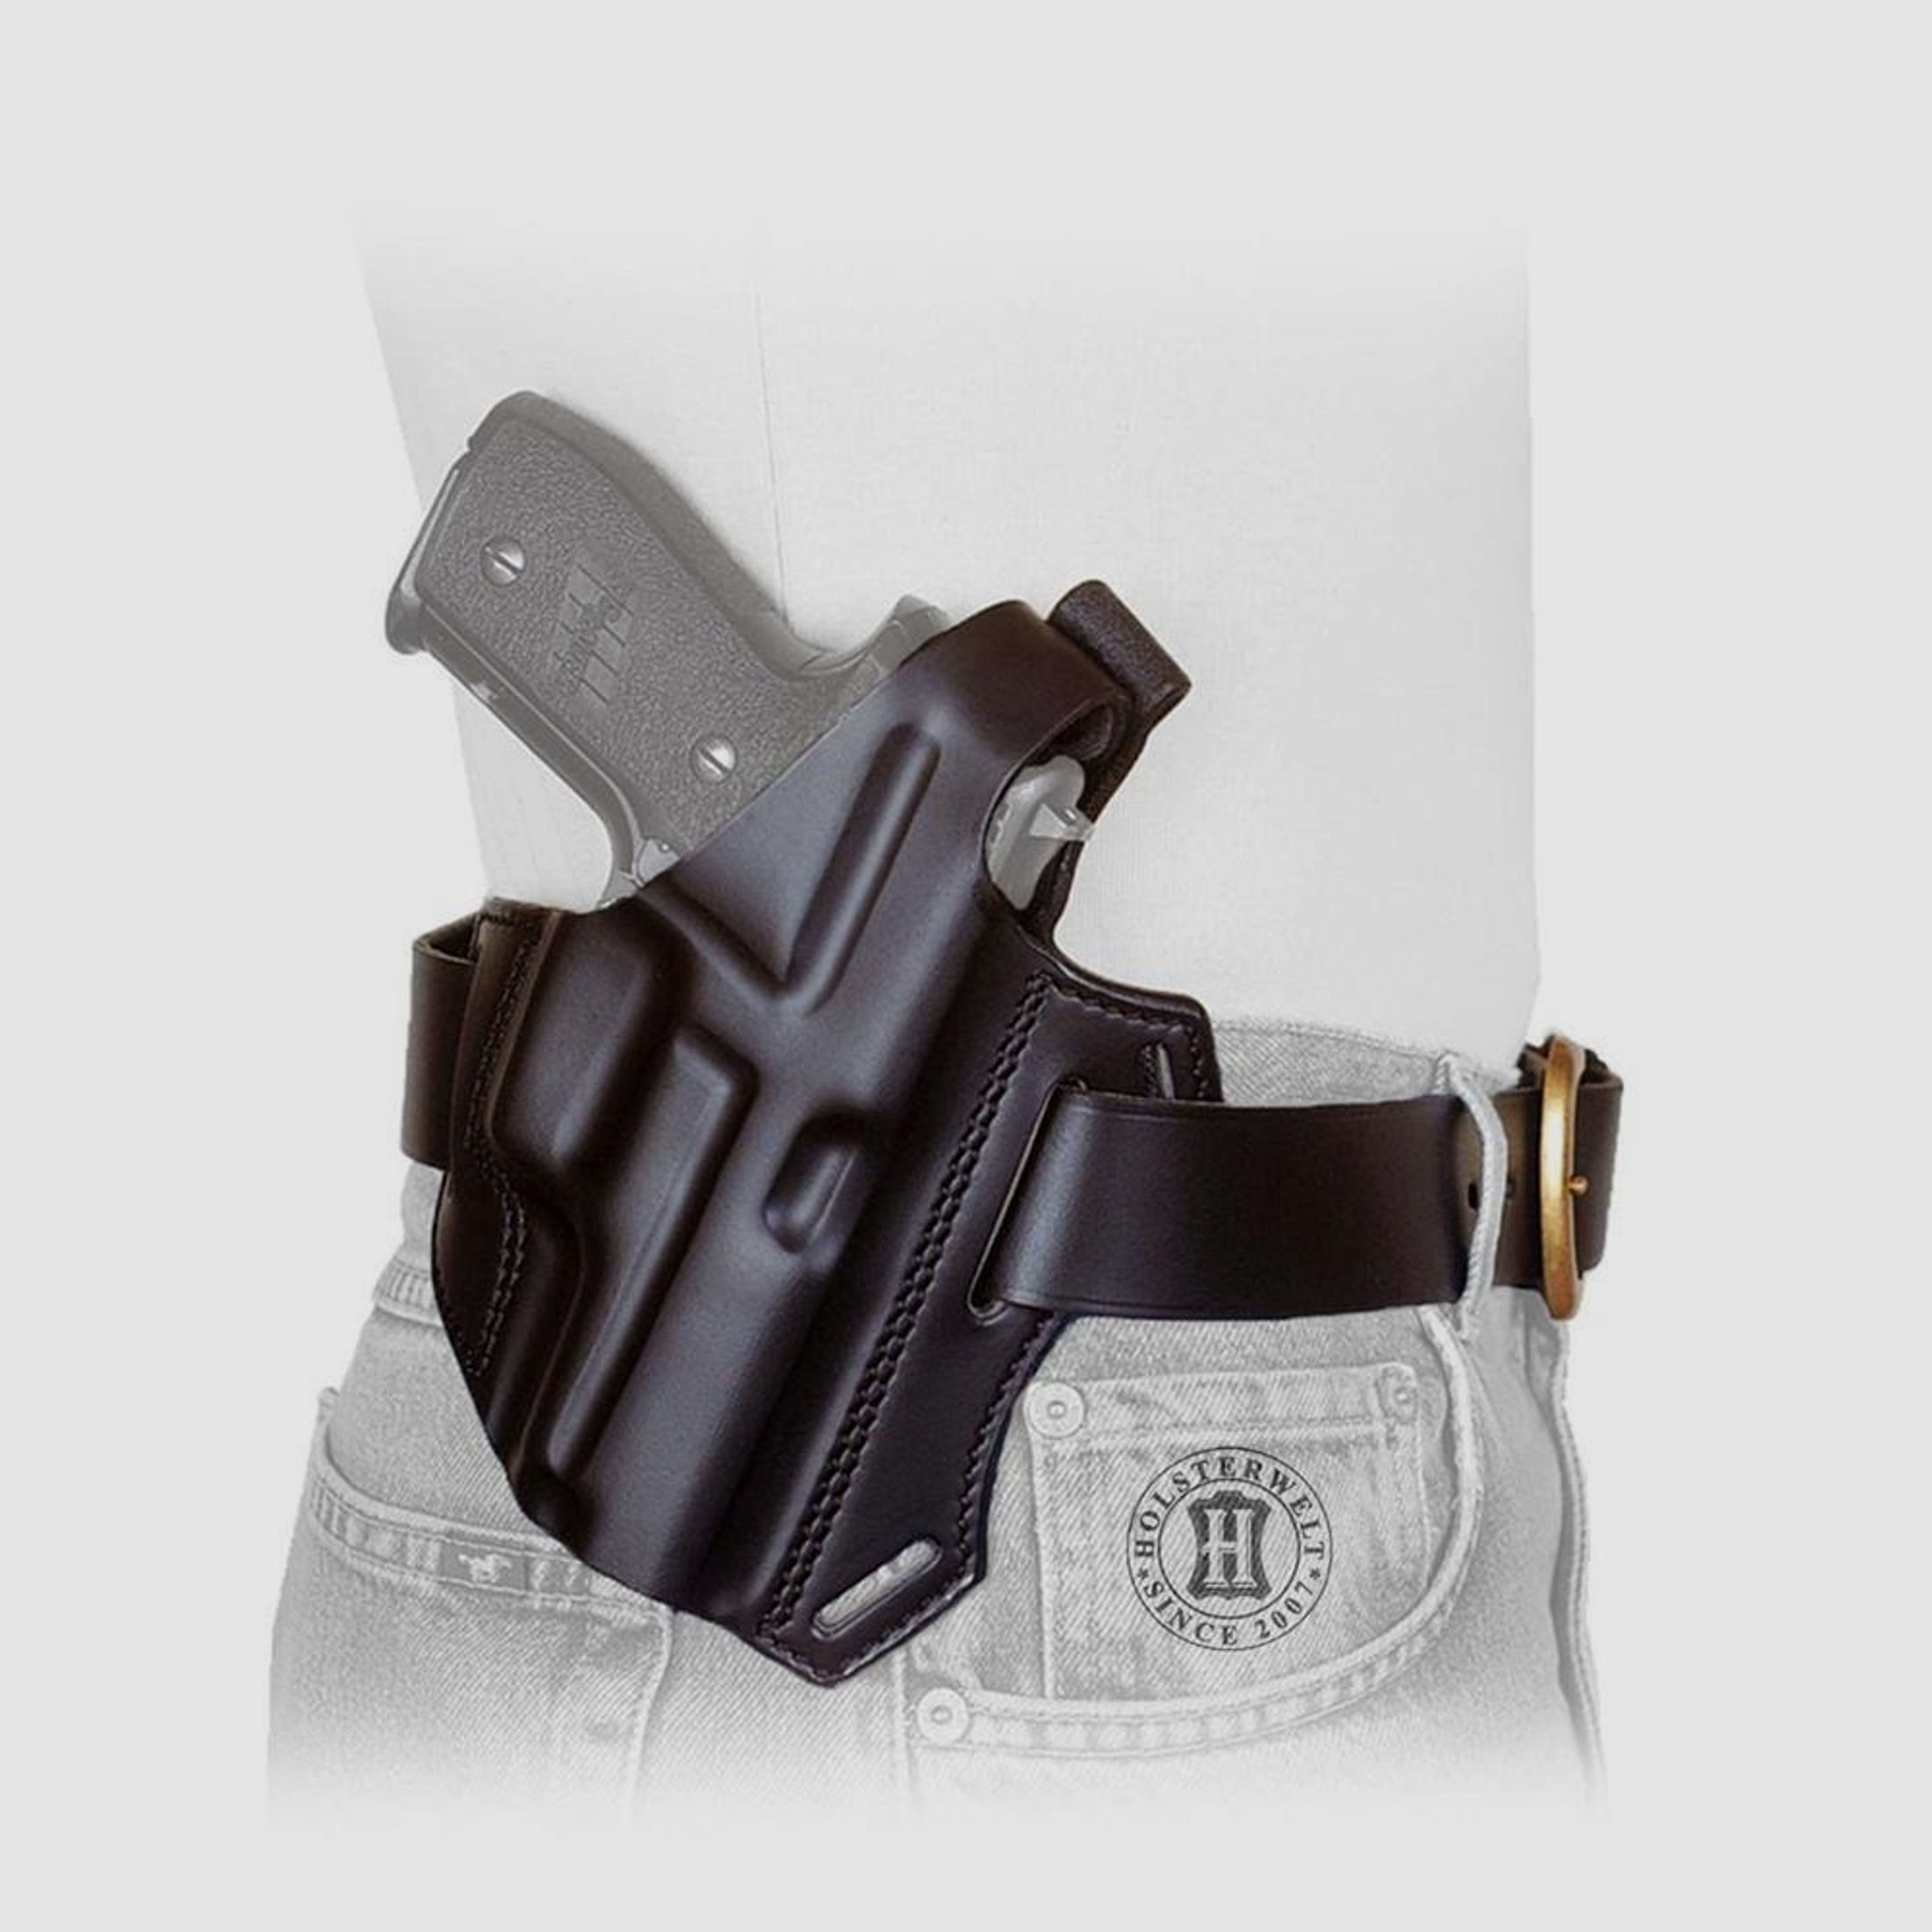 Gürtelholster / Schulterholster MULTI VARIO Glock 26/27/39/28/33-Braun-Linkshänder